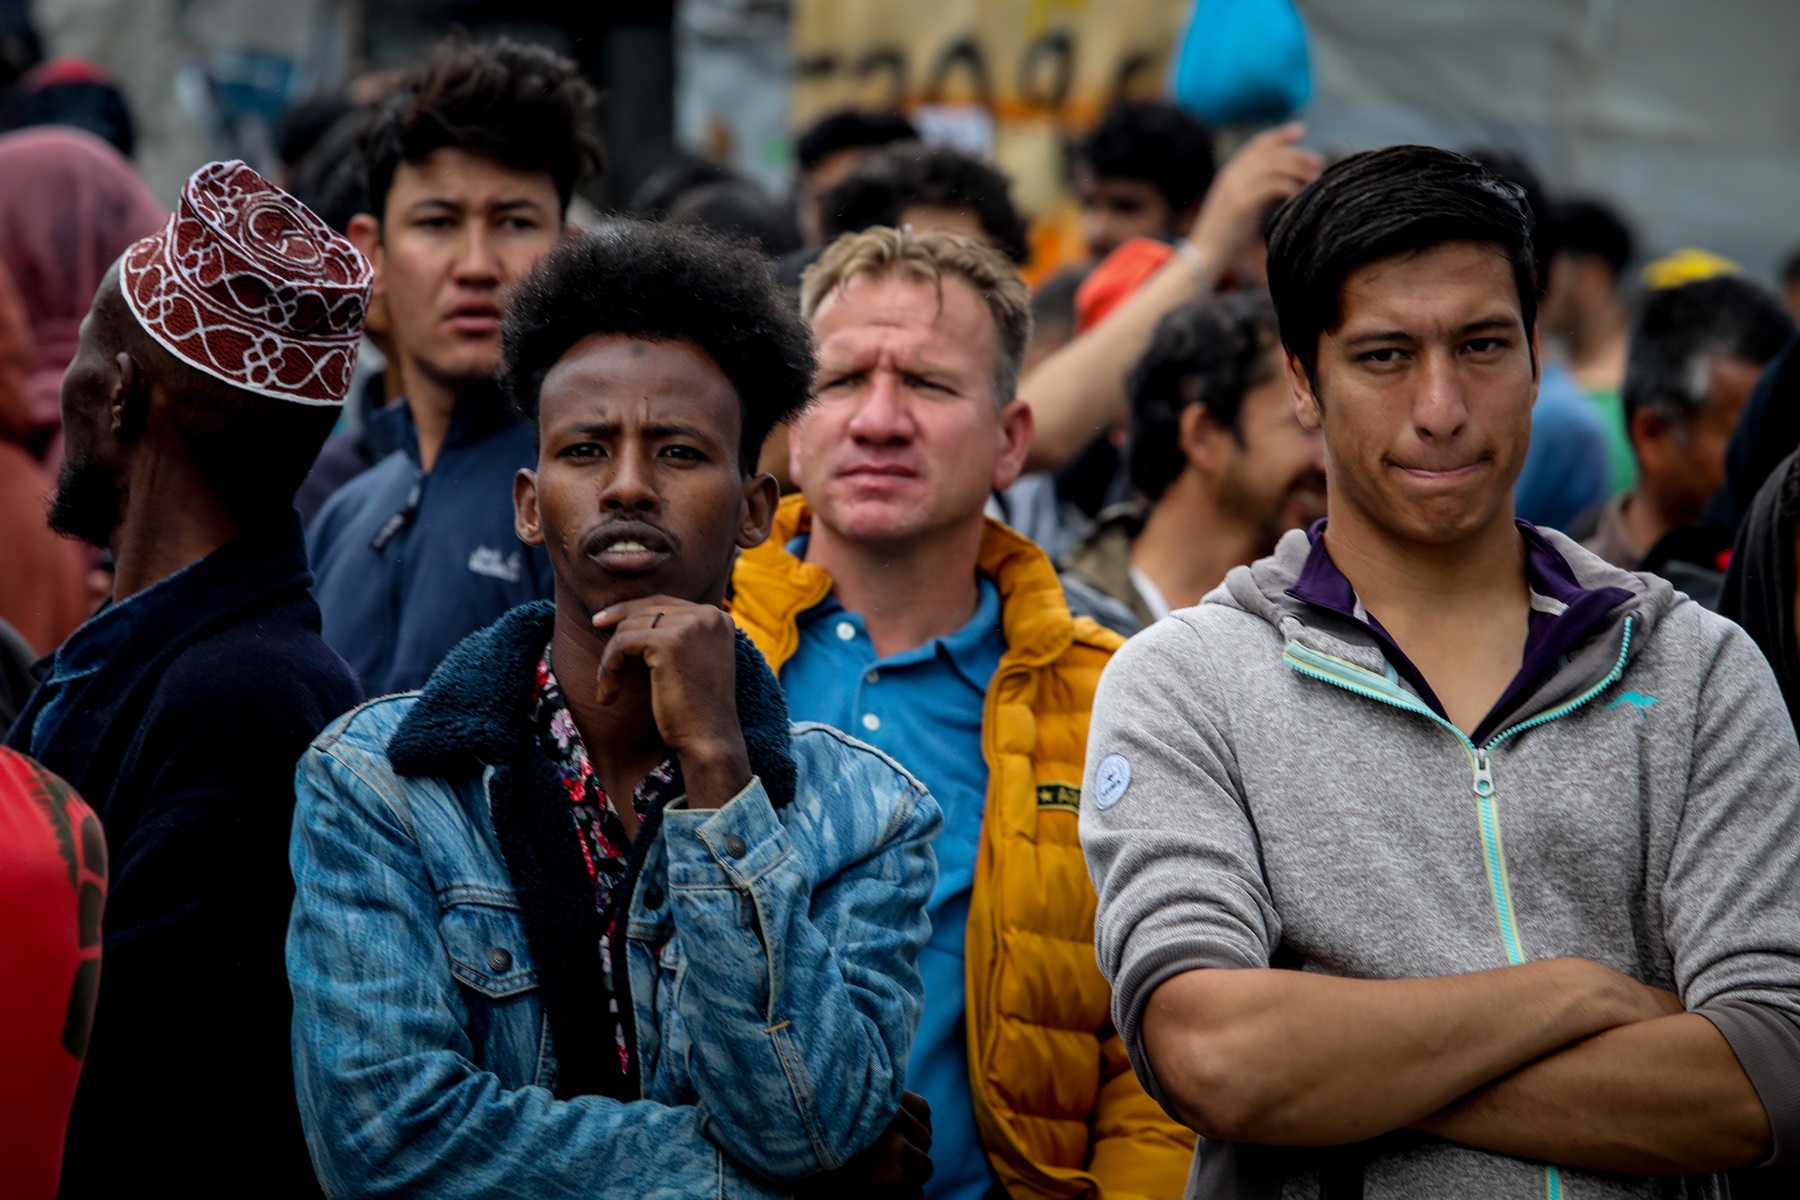 Μεταναστευτικό 2021 αλλαγές: Ποιοι μετανάστες δεν θα μπορούν πλέον να αιτηθούν άσυλο στην Ελλάδα